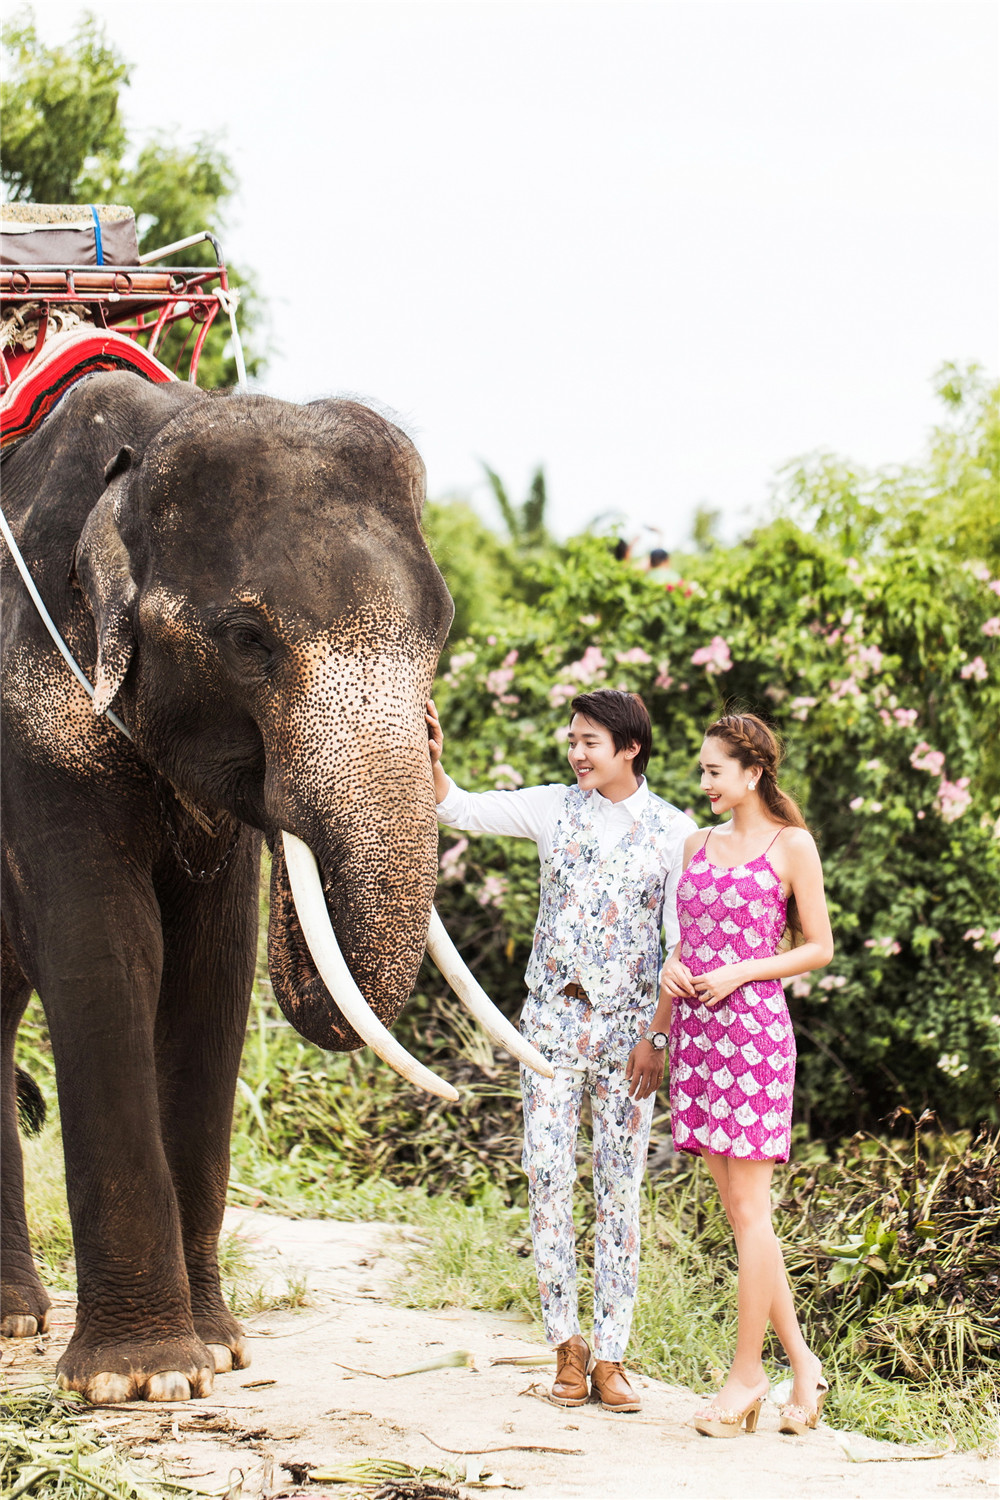 泰国-大象的见证-图片1